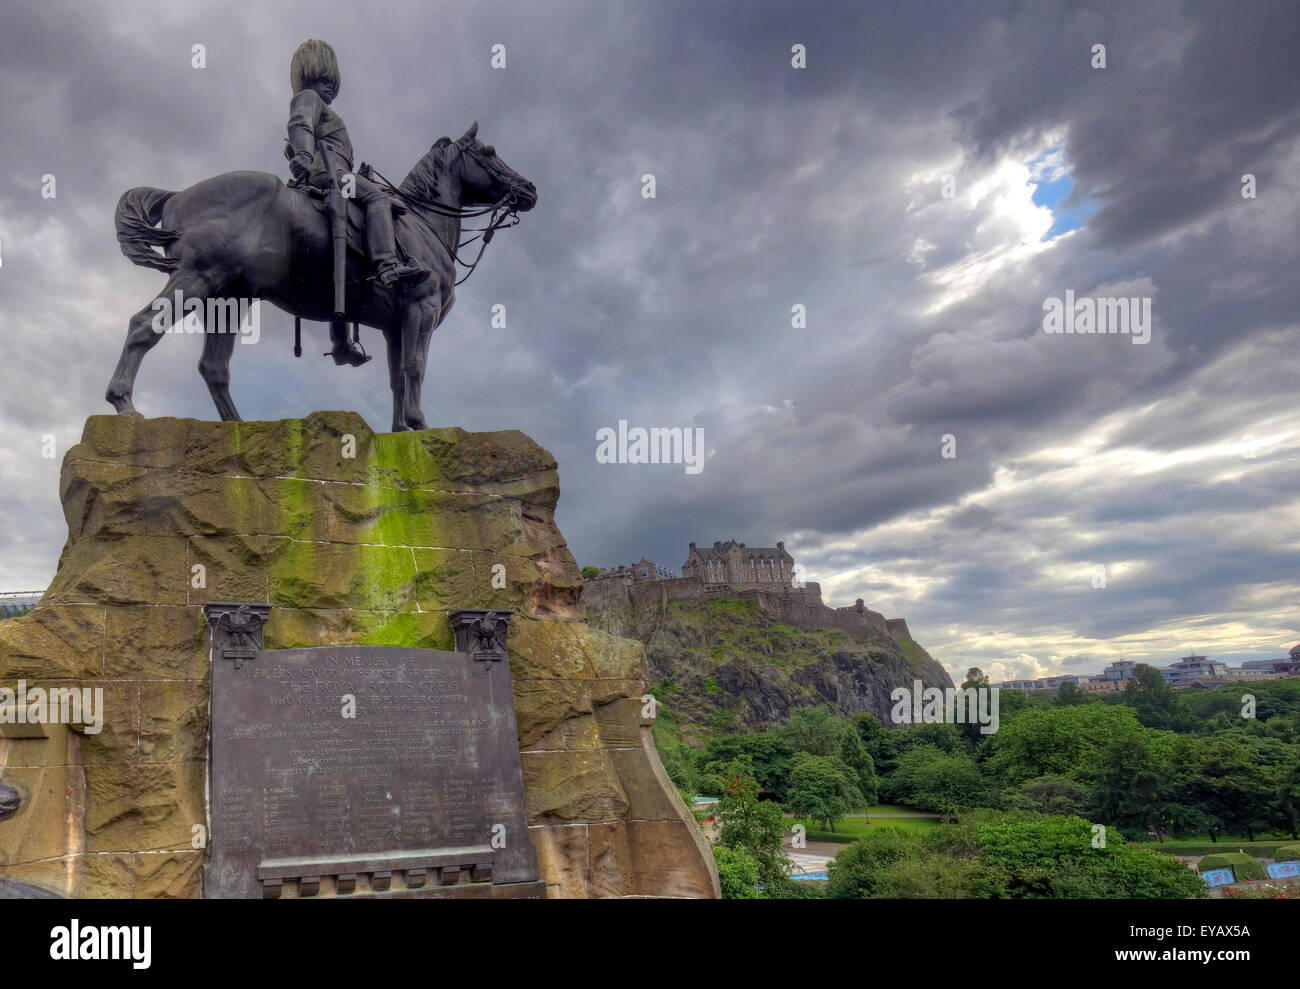 Statue/Gedenktafel in Erinnerung an die Royal Scots Greys, Princes St, Edinburgh, Scotland, UK Stockfoto